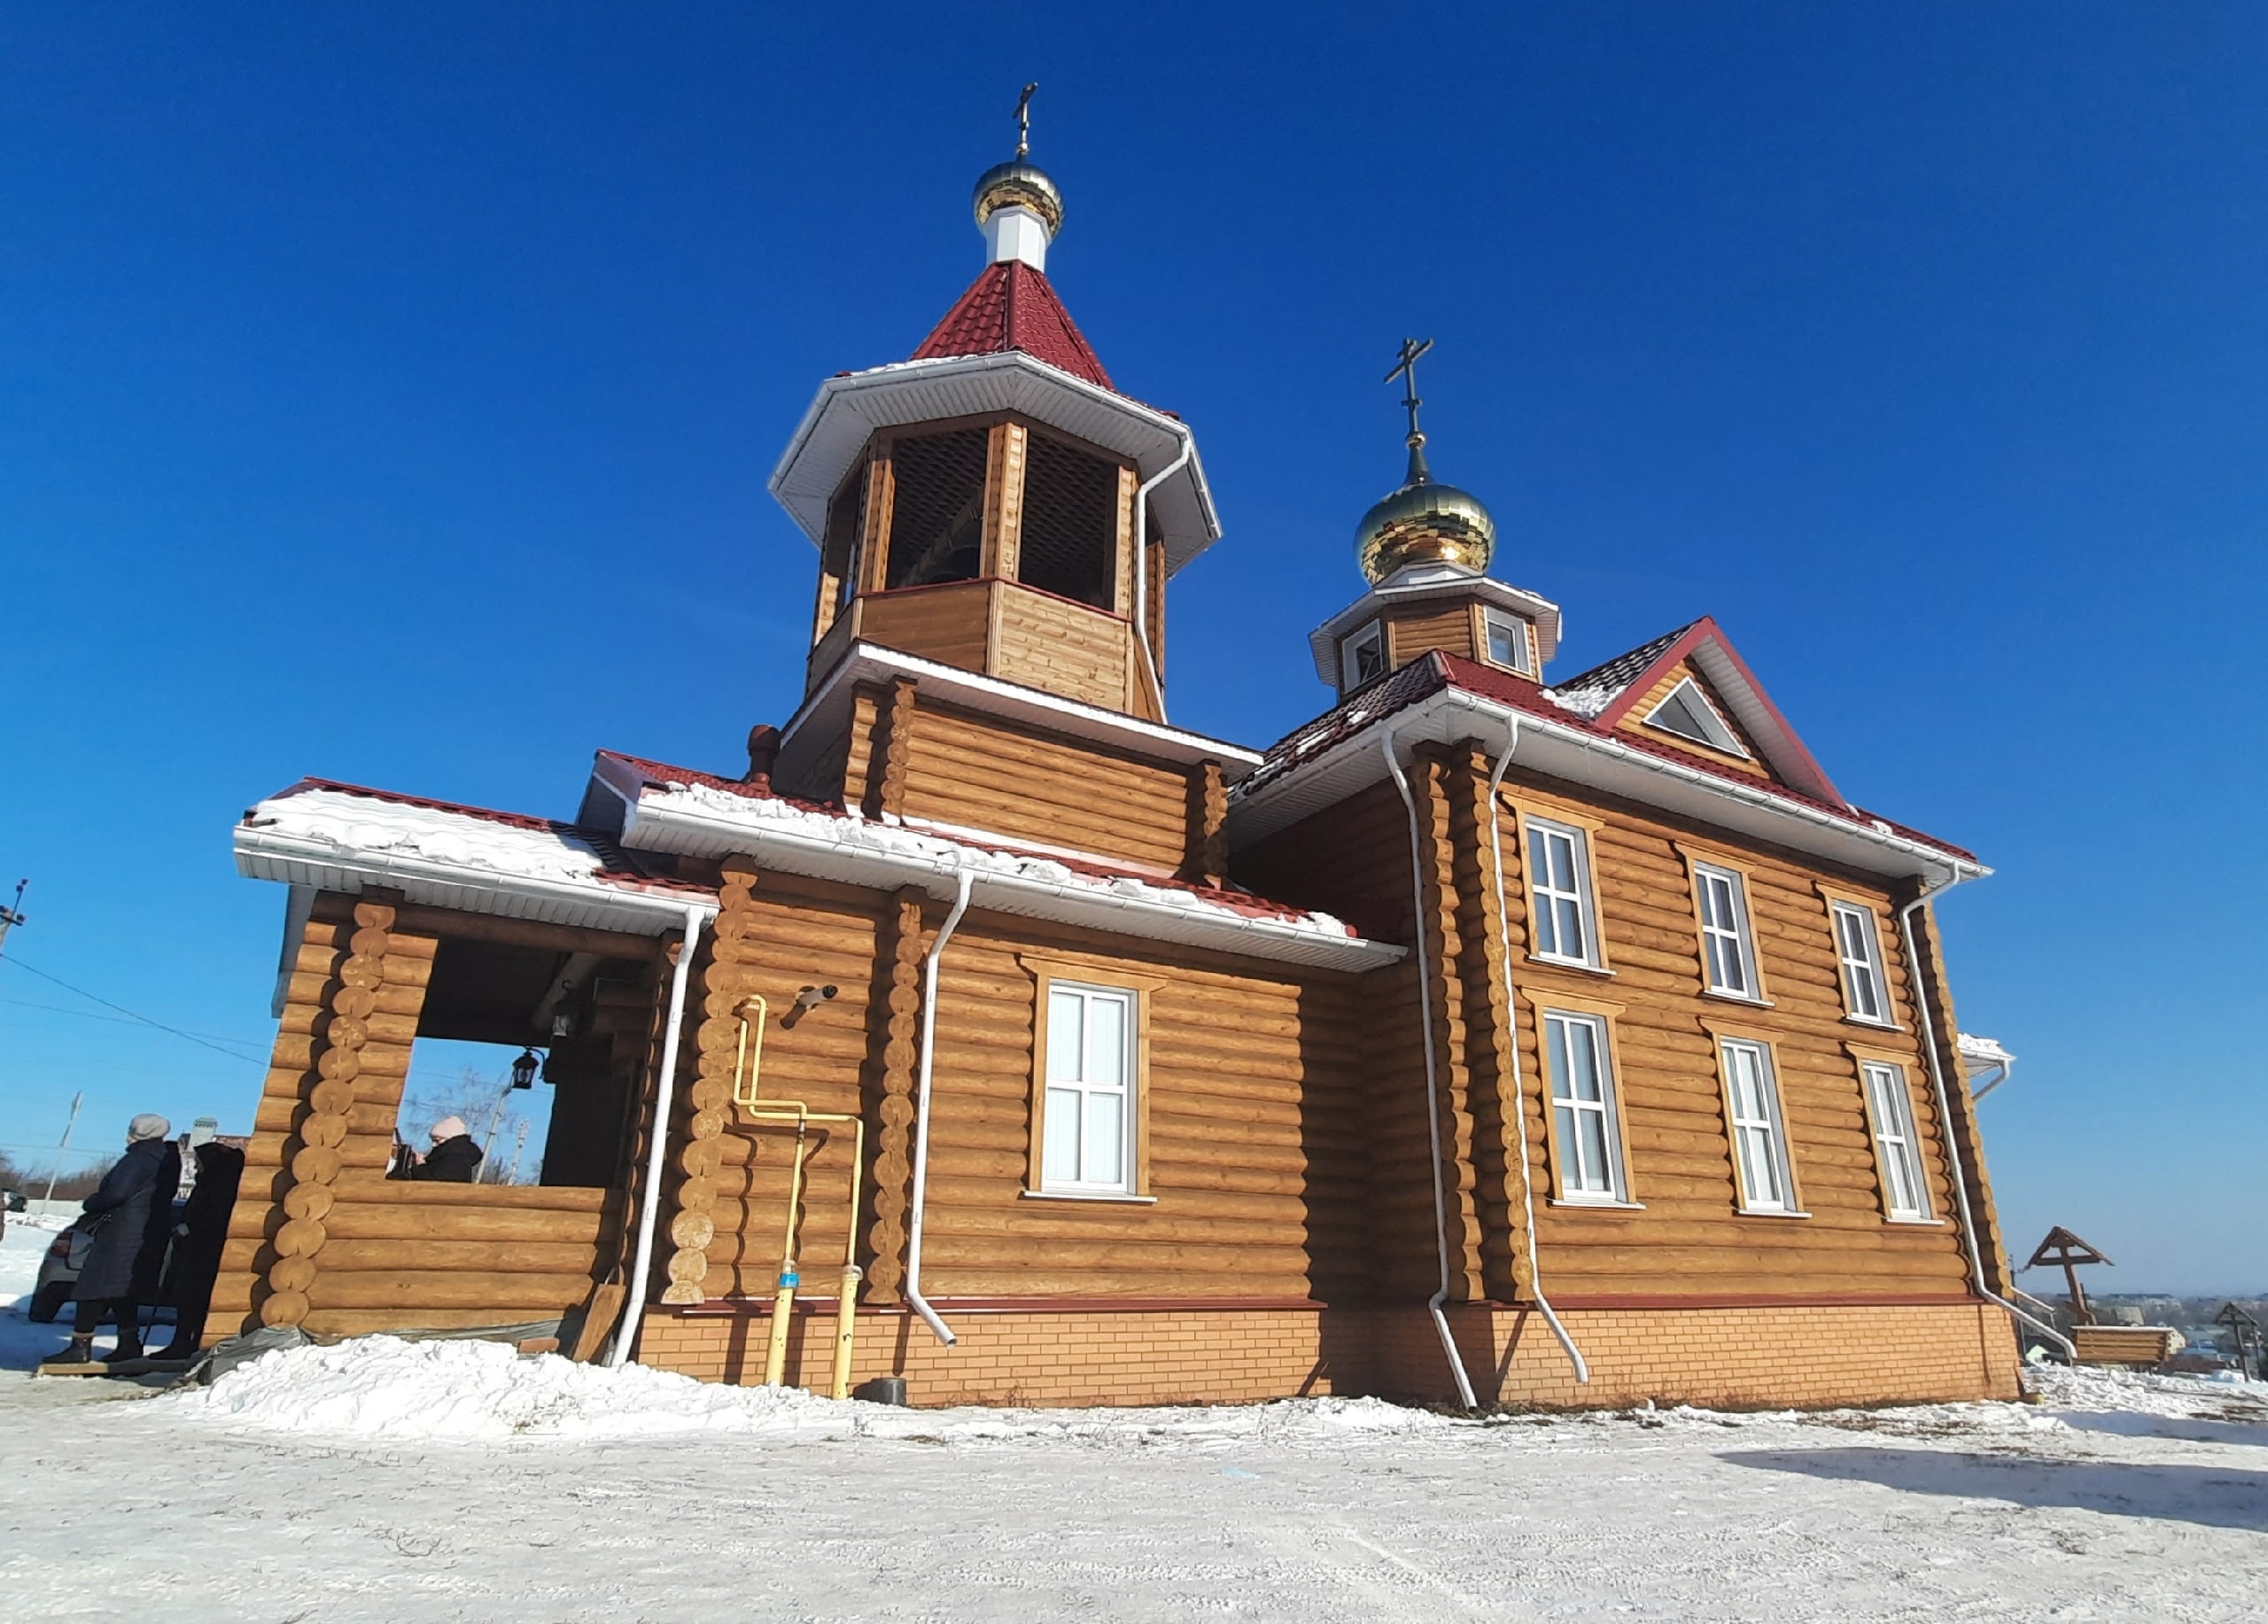 Храм в Моршанске Тамбовской области